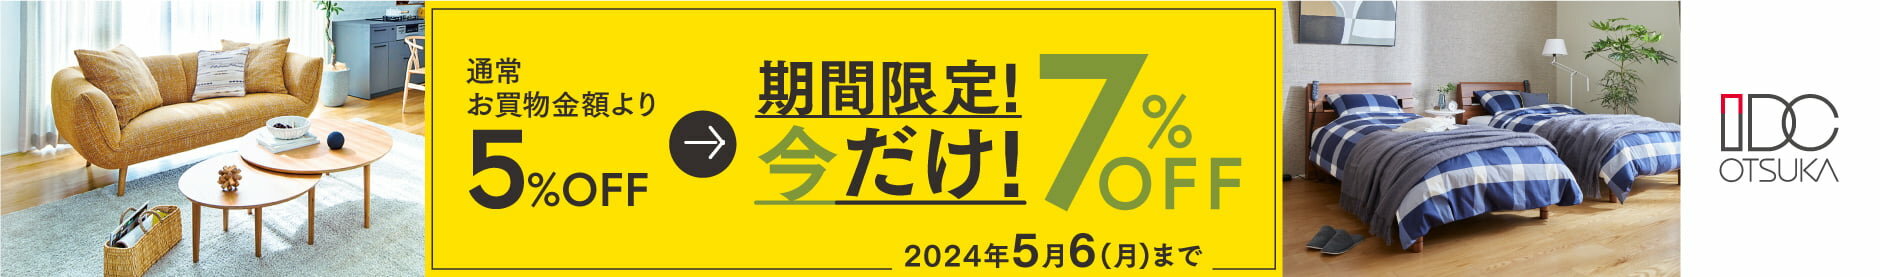 大塚家具 期間限定キャンペーン「通常お買い物金額より今だけ7％OFF」